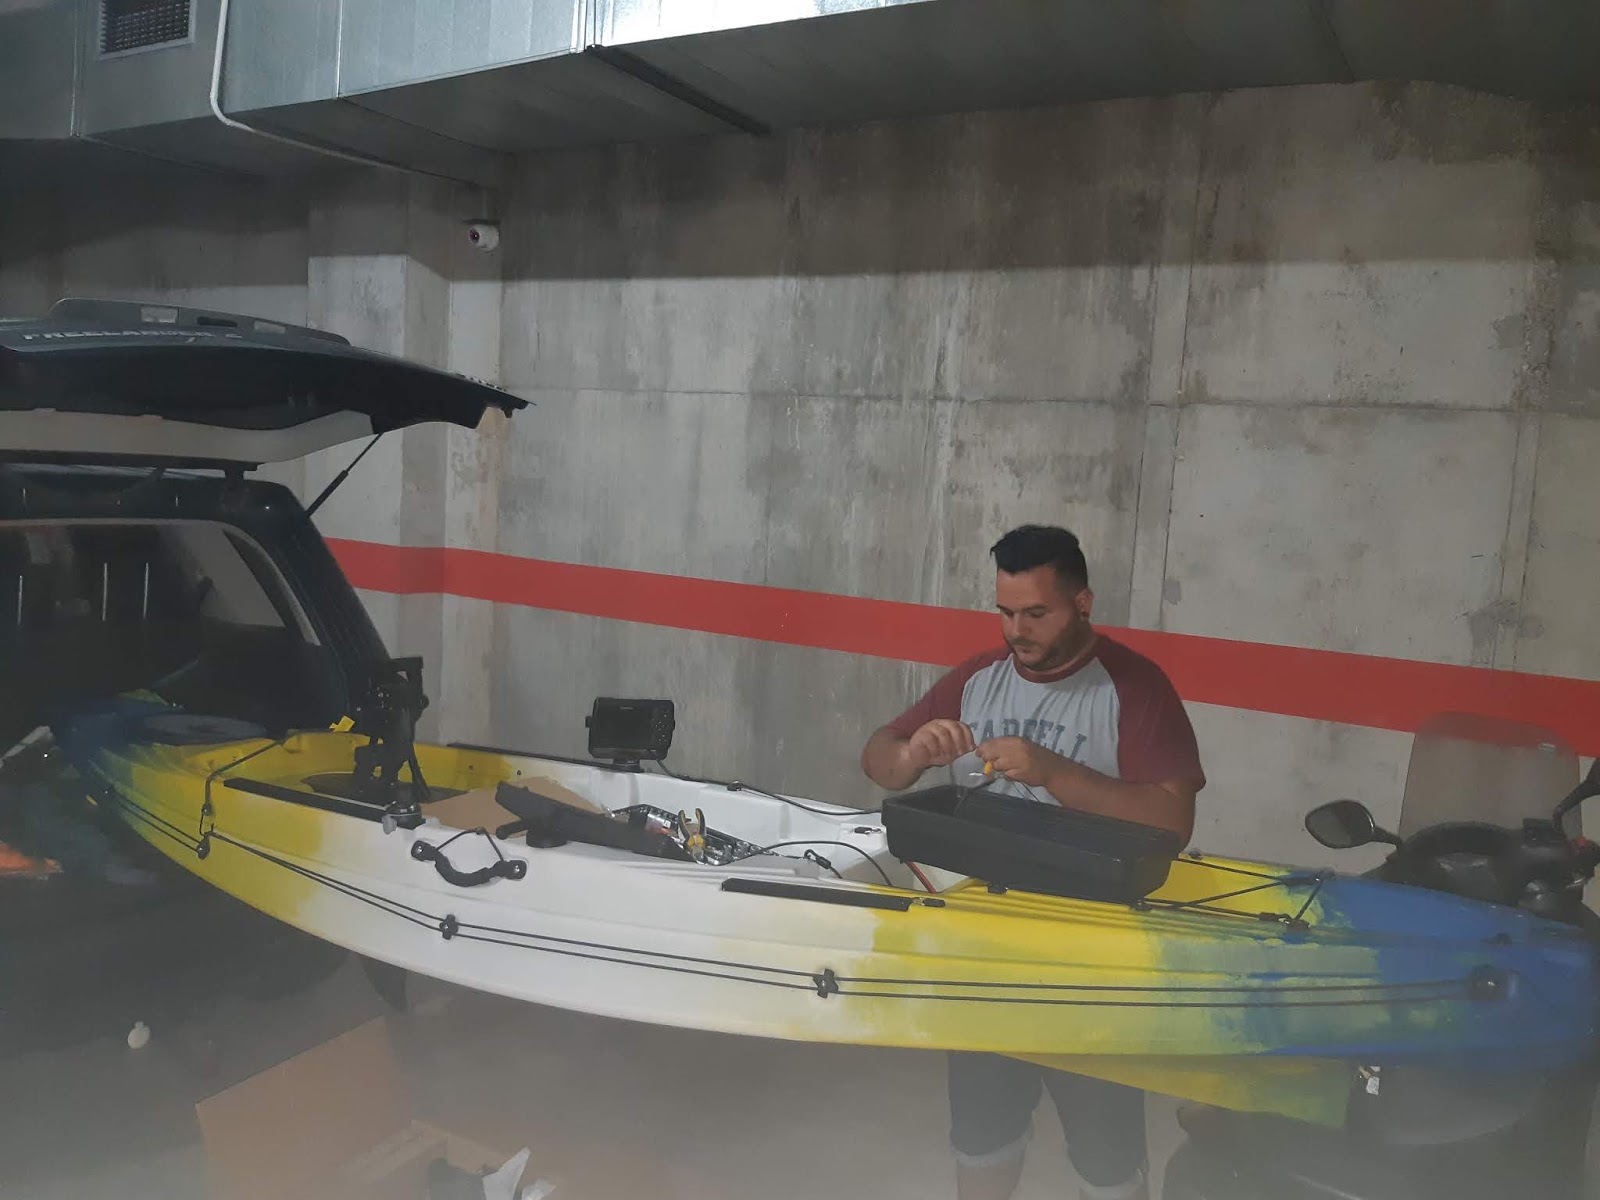 Instalación sonda de pesca en kayak Barracuda. ¡Cómo se pone el Sonar en el  kayak! 